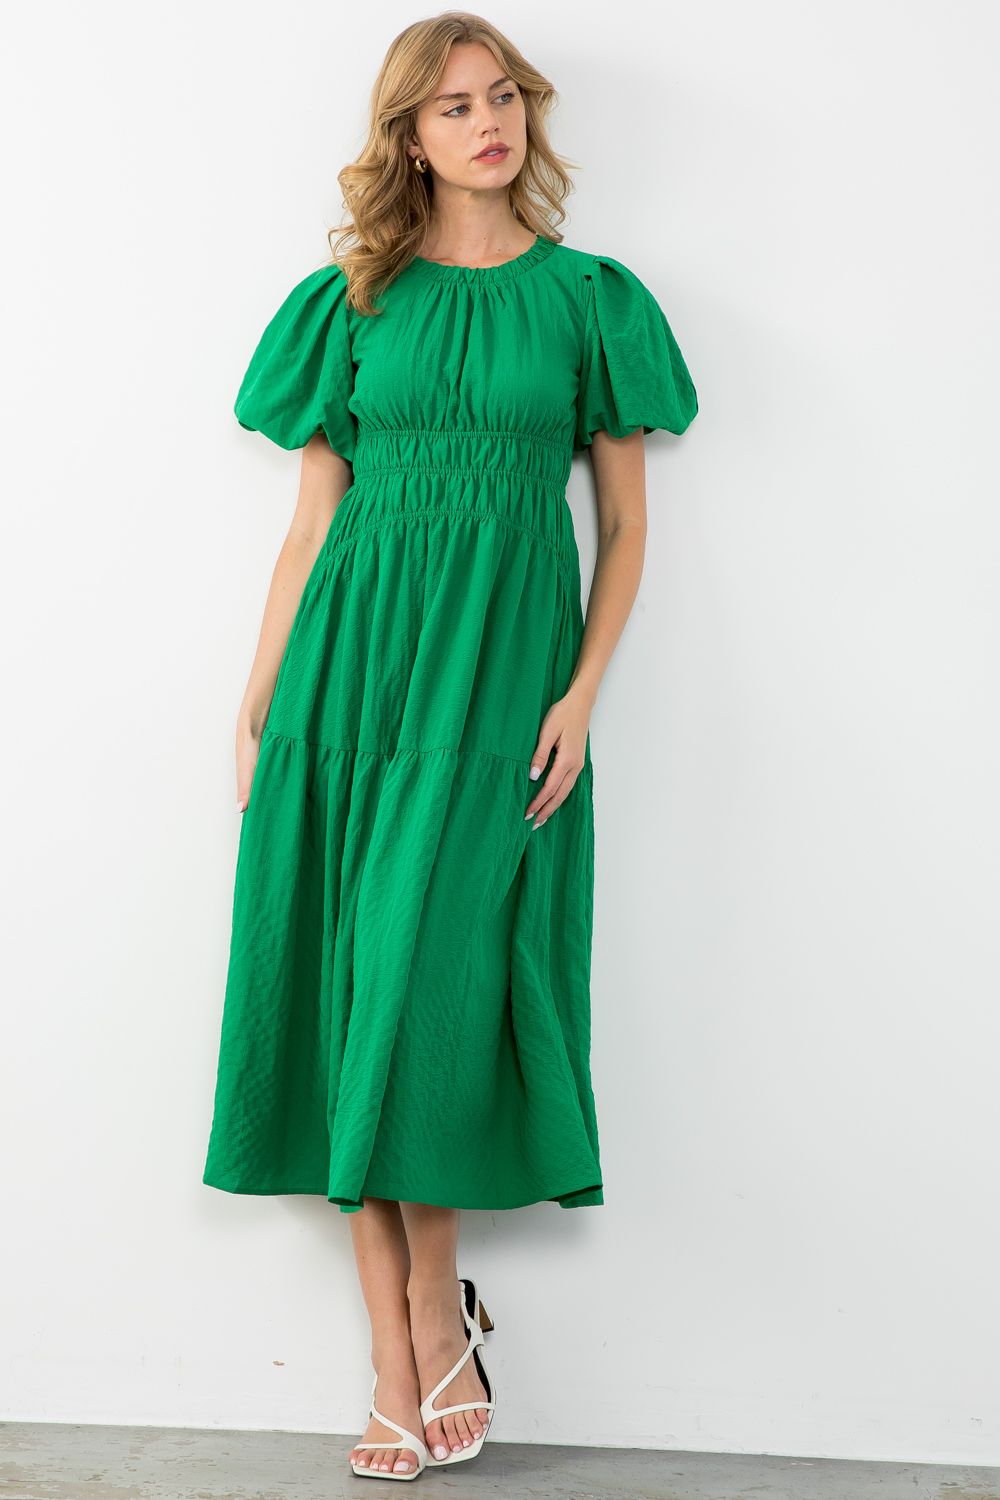 Green Goddess Maxi Dress